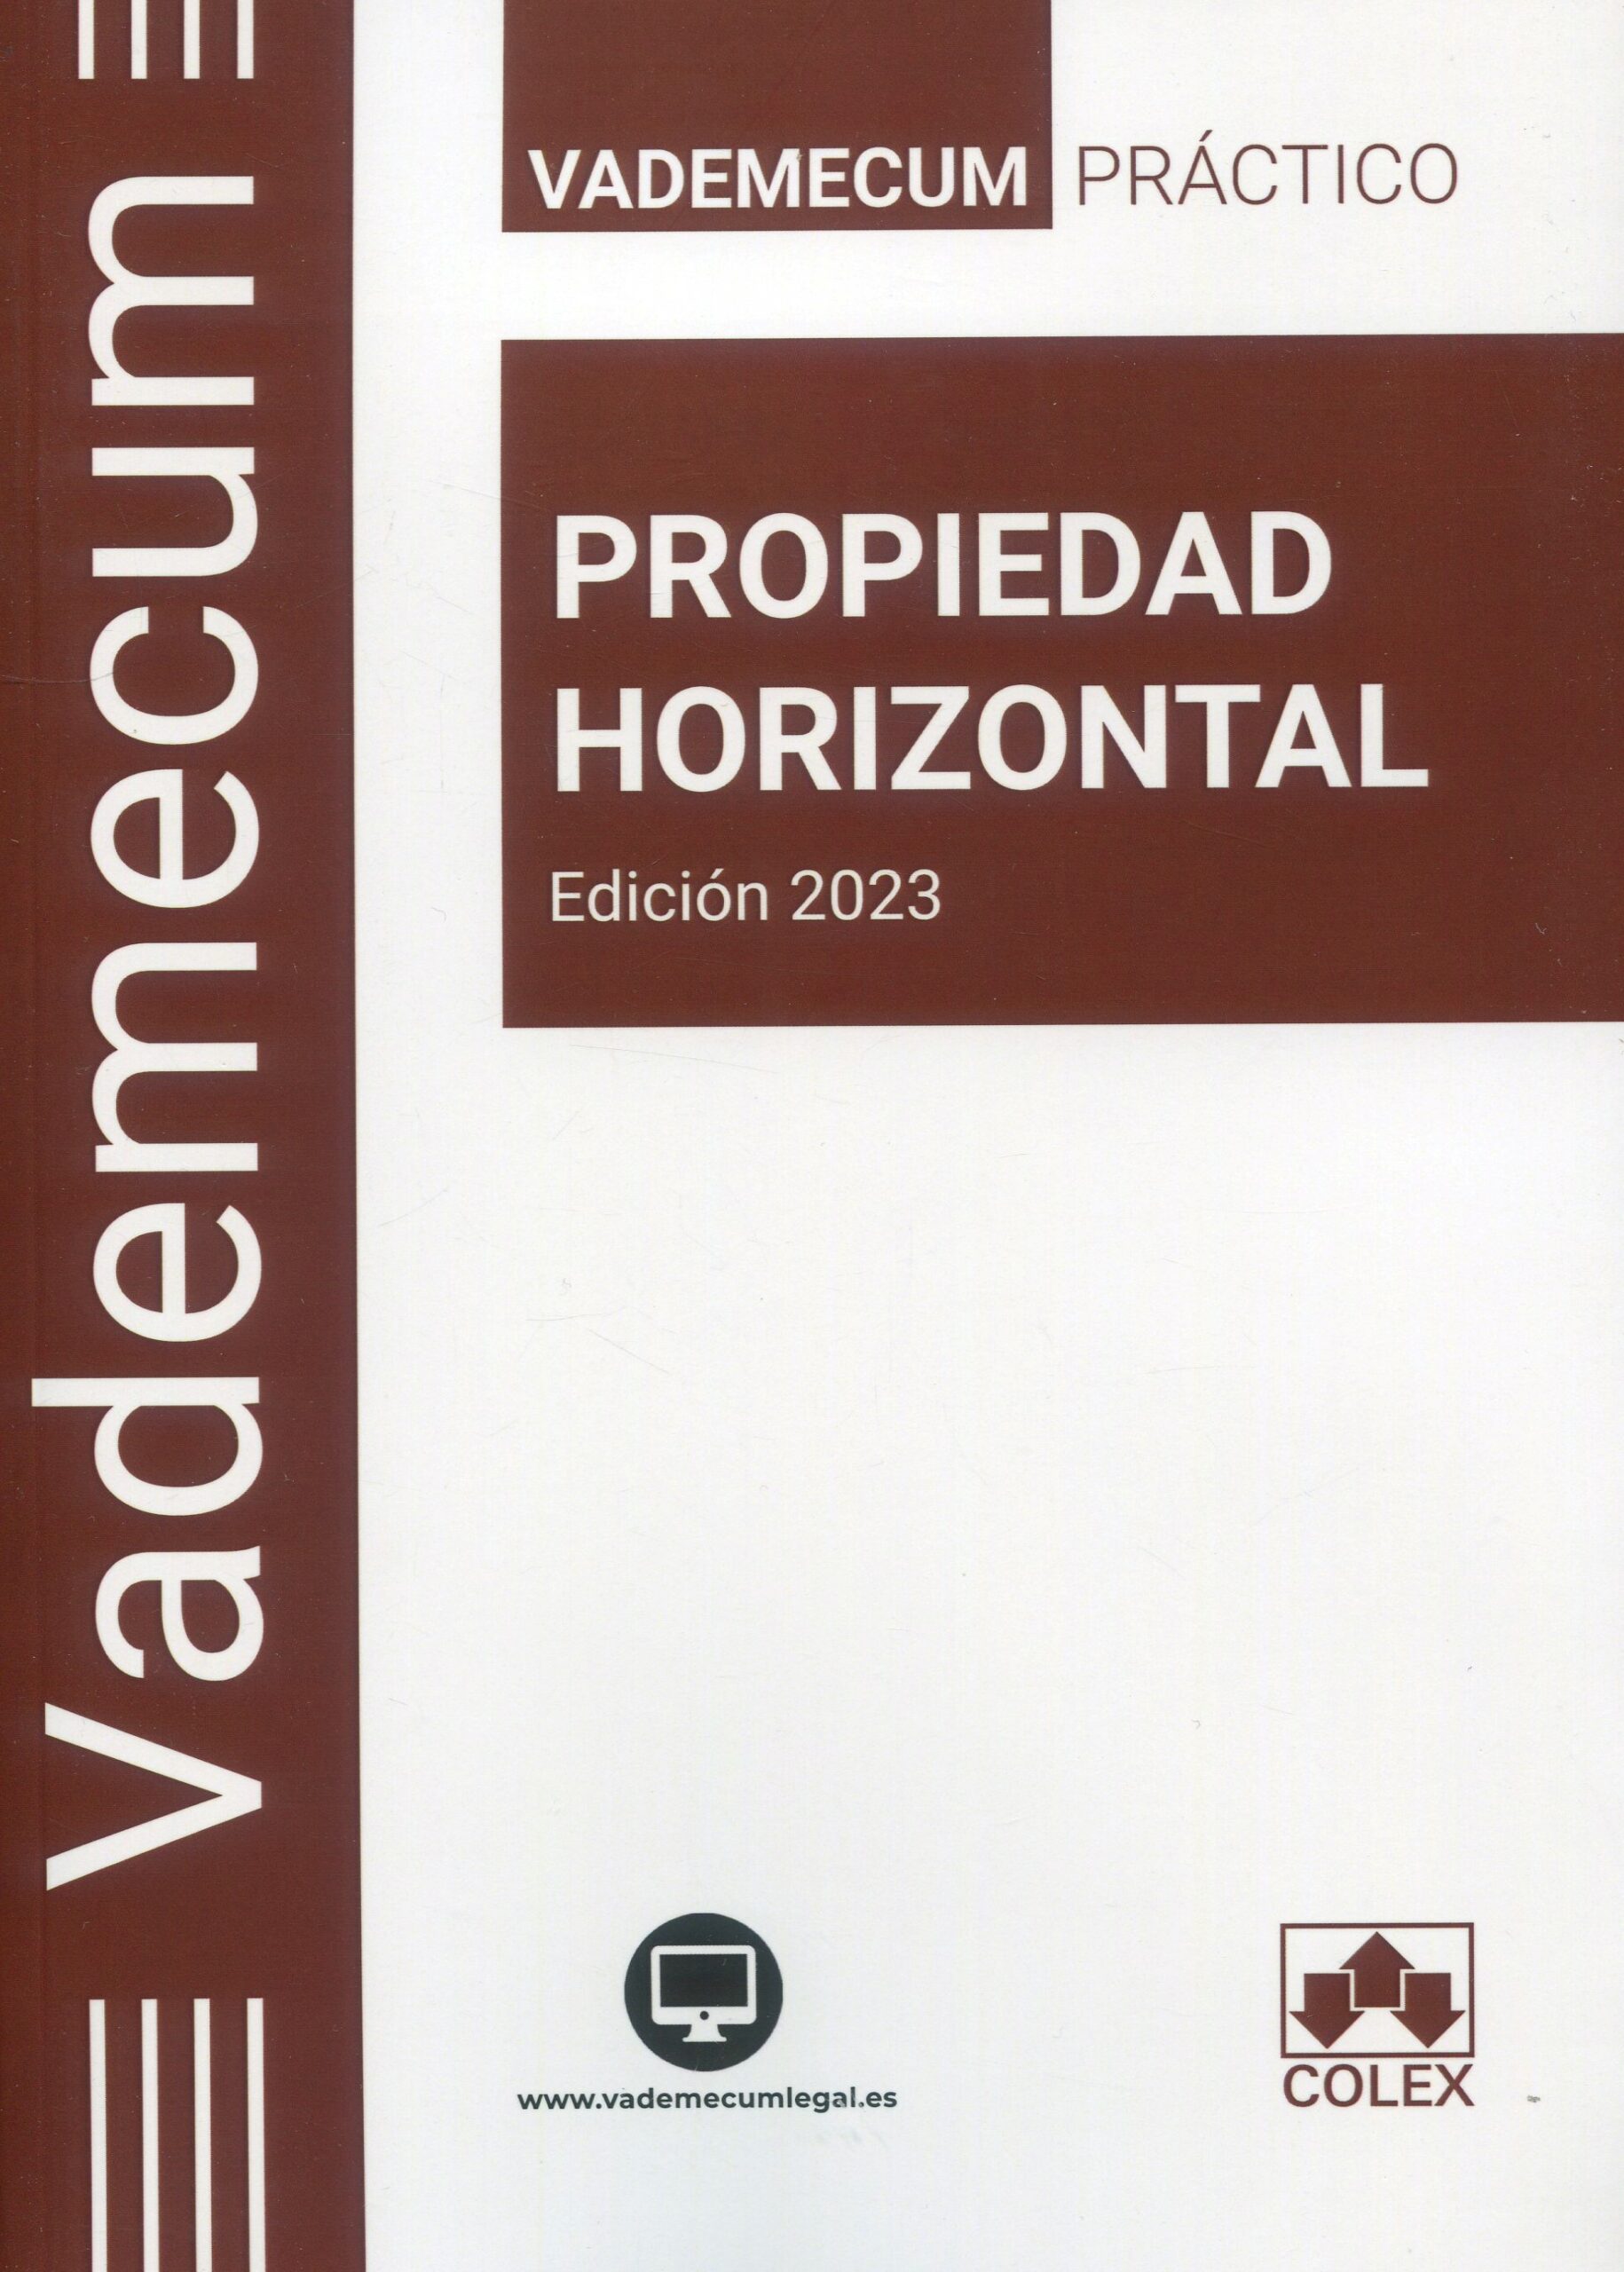 Vademecum práctico Propiedad horizontal 2023